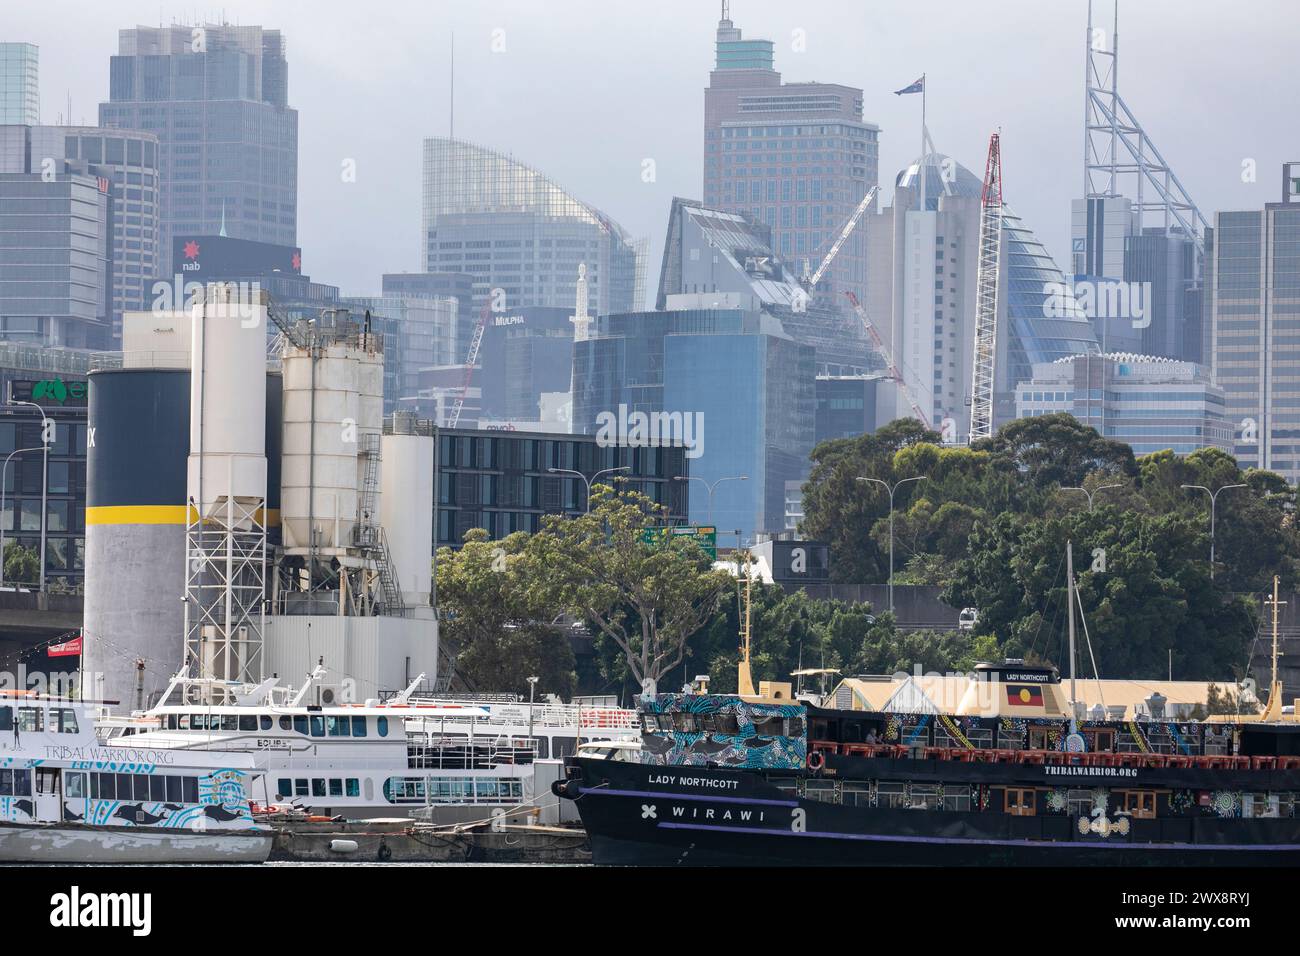 Lady Northcott Wirawi Fährschiff, heute als erste indigene Fähre in Australien betrieben, Sydney Skyline Towers, 2024 Stockfoto